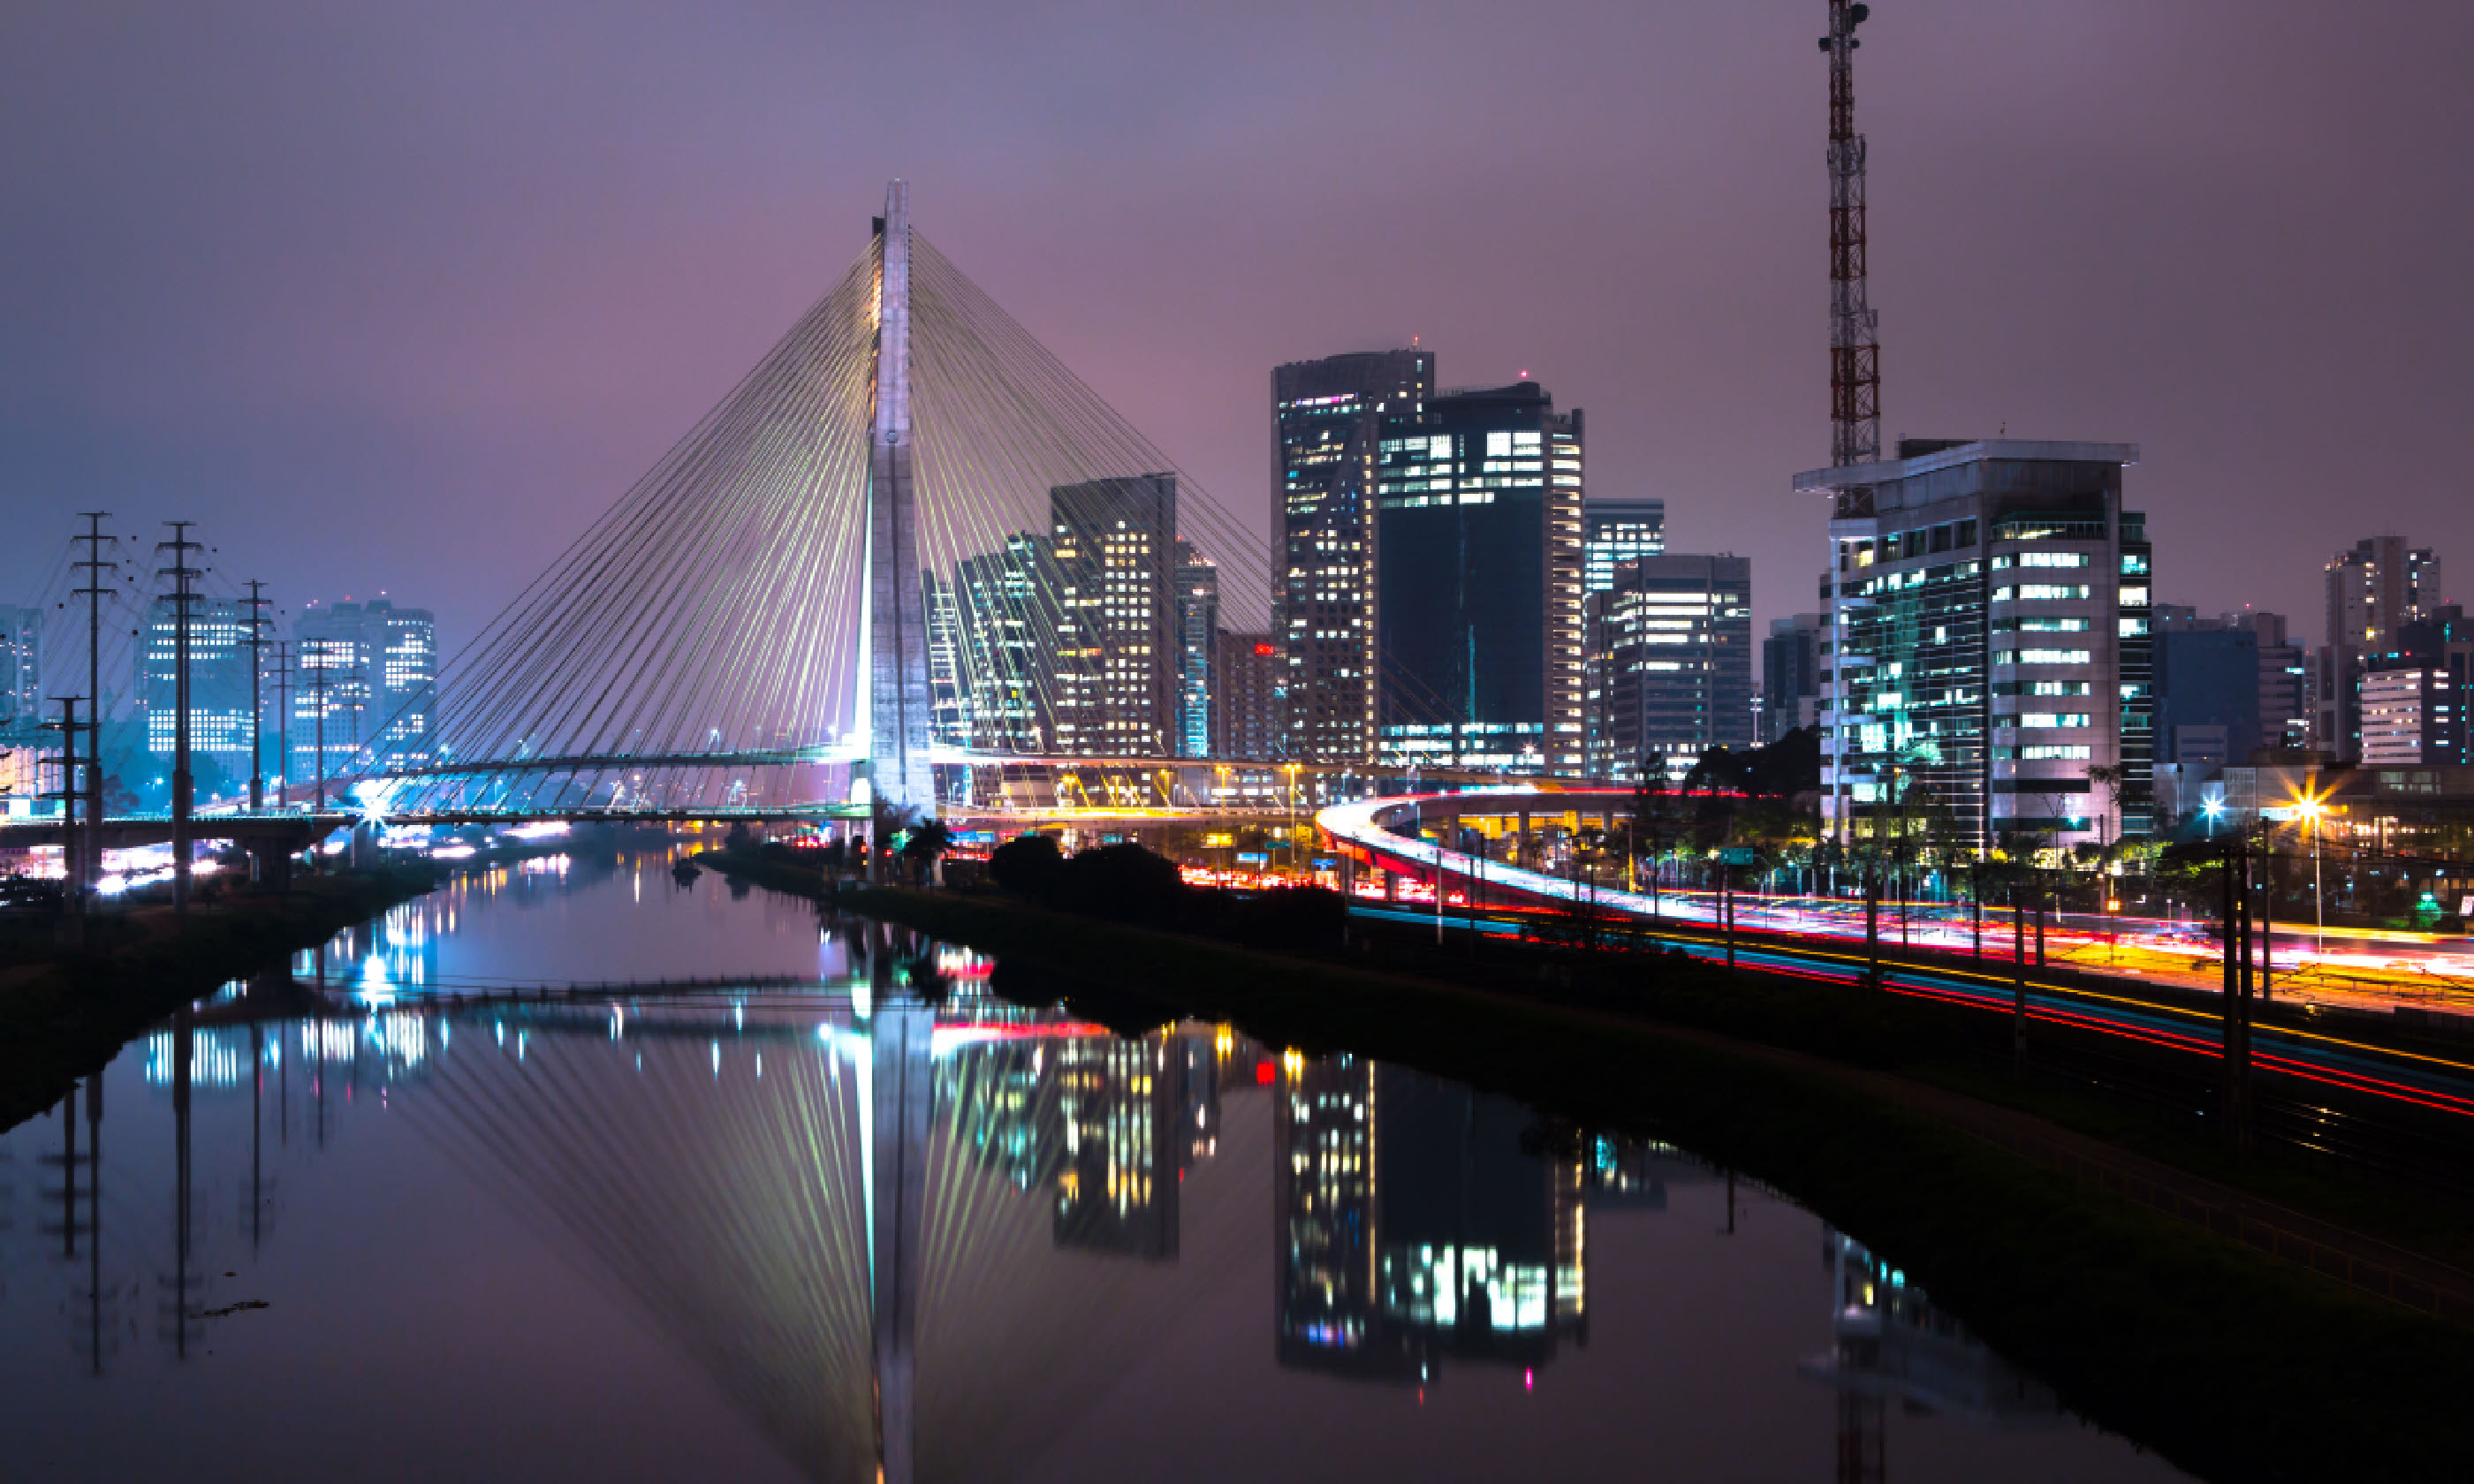 Sao Paulo at night (Shutterstock)